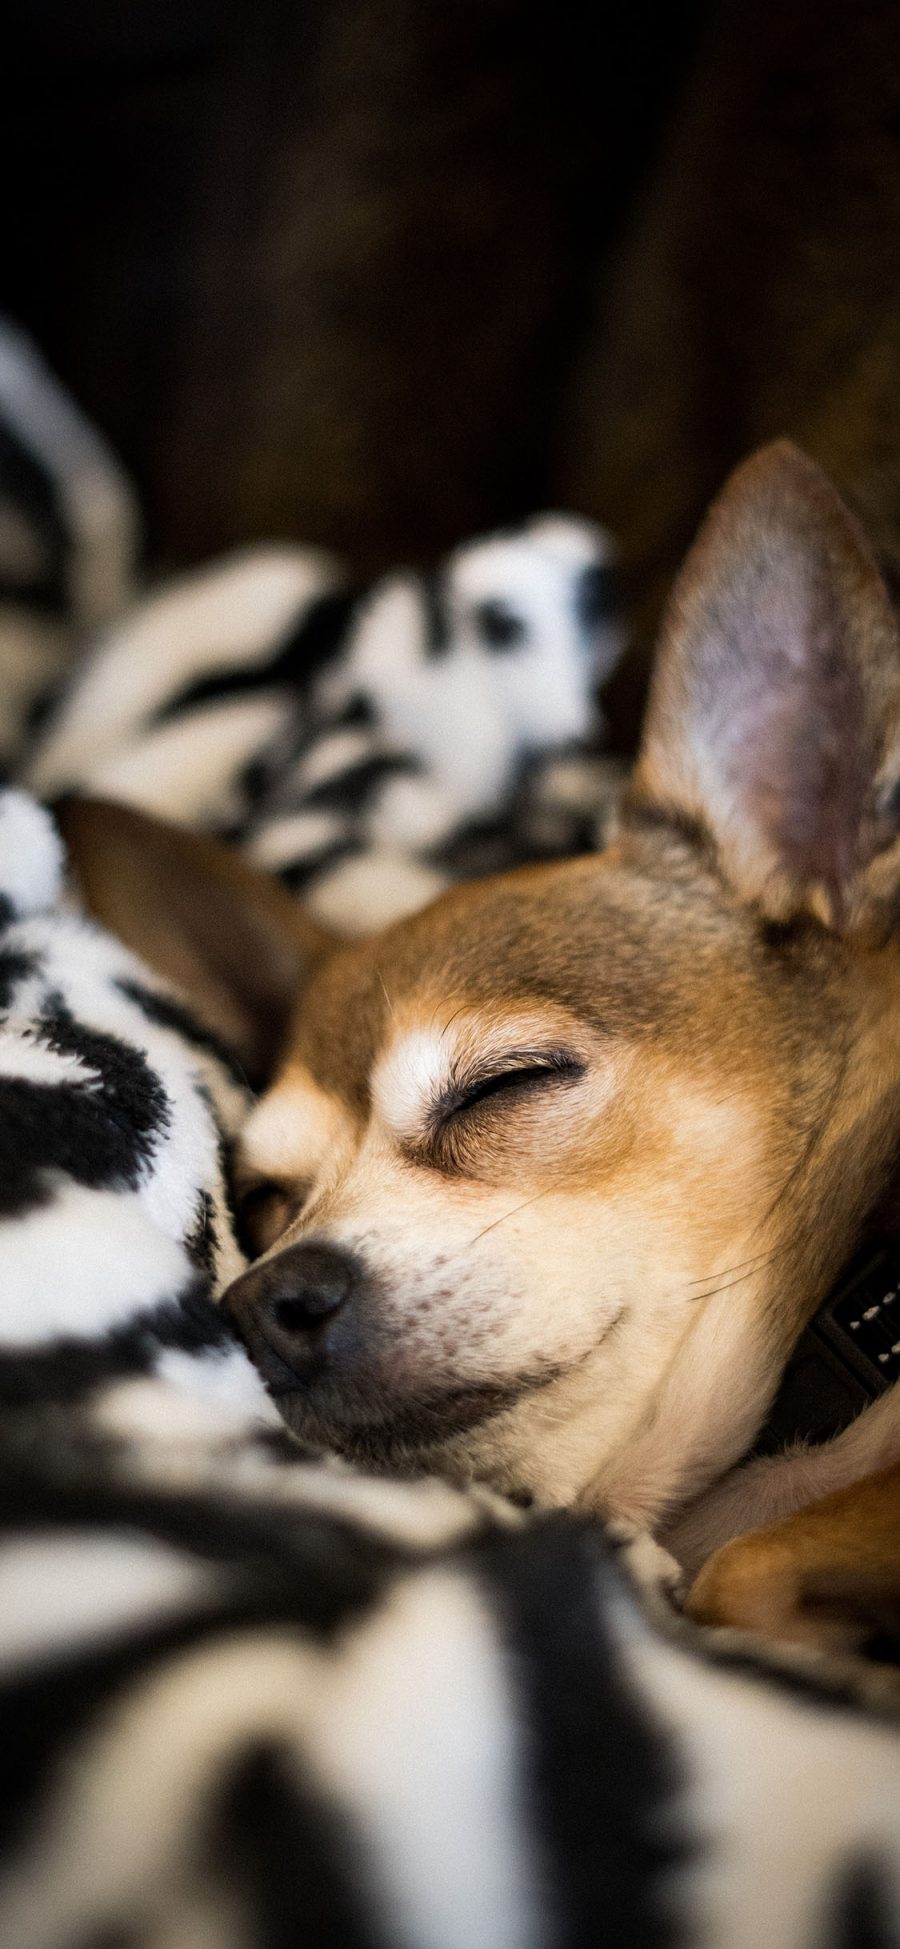 [2436×1125]毛毯 宠物 休憩 睡眠 狗 苹果手机壁纸图片